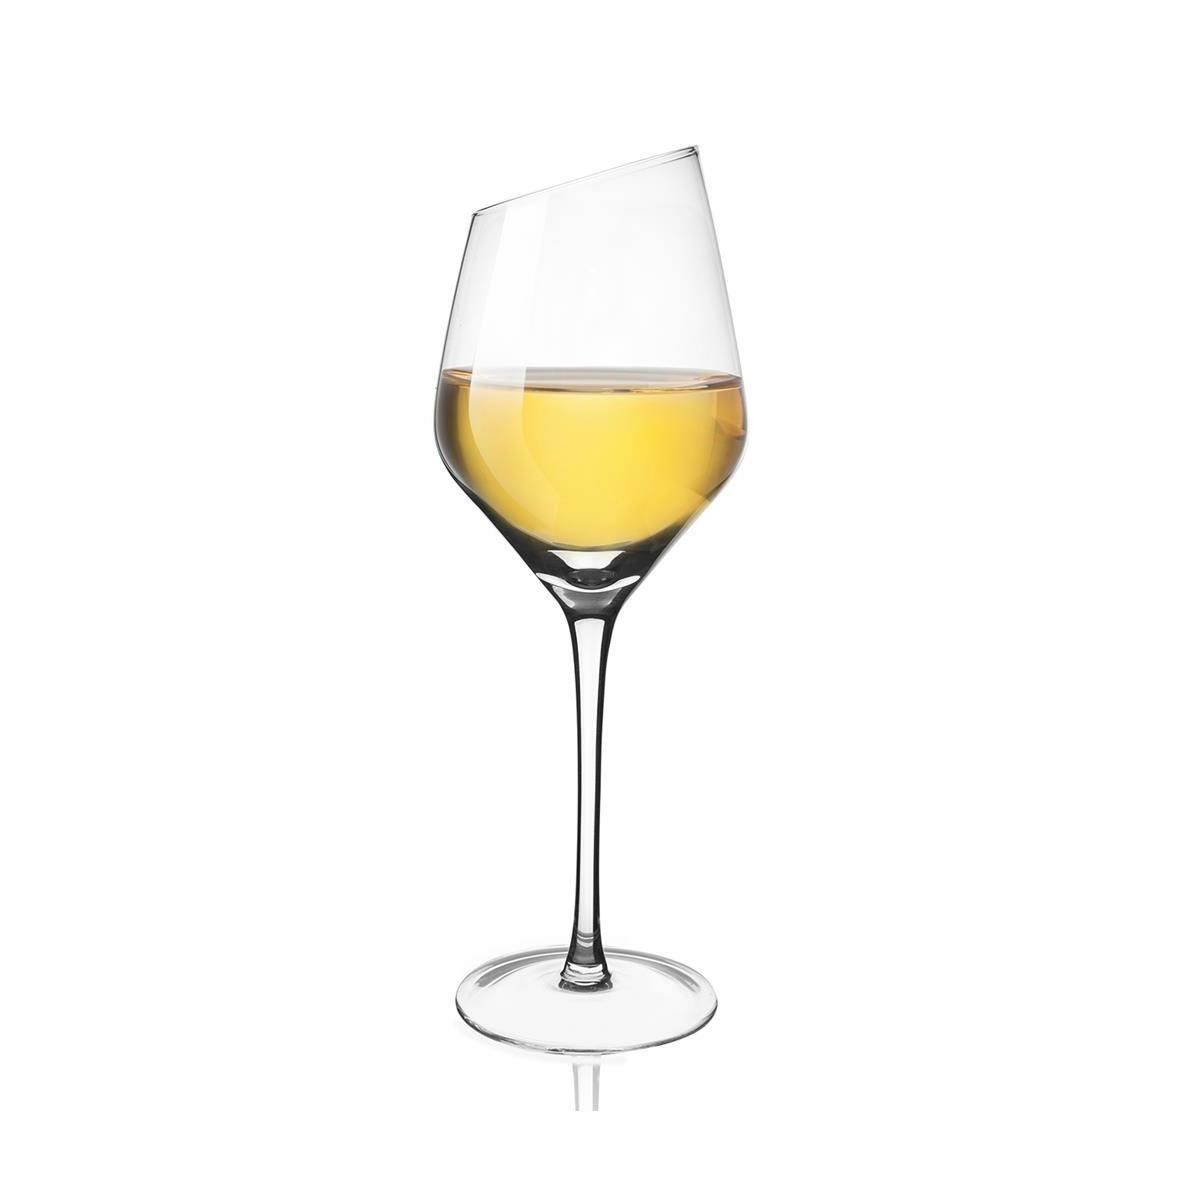 Orion Sklenice na bílé víno Exclusive, 6 ks - 4home.cz